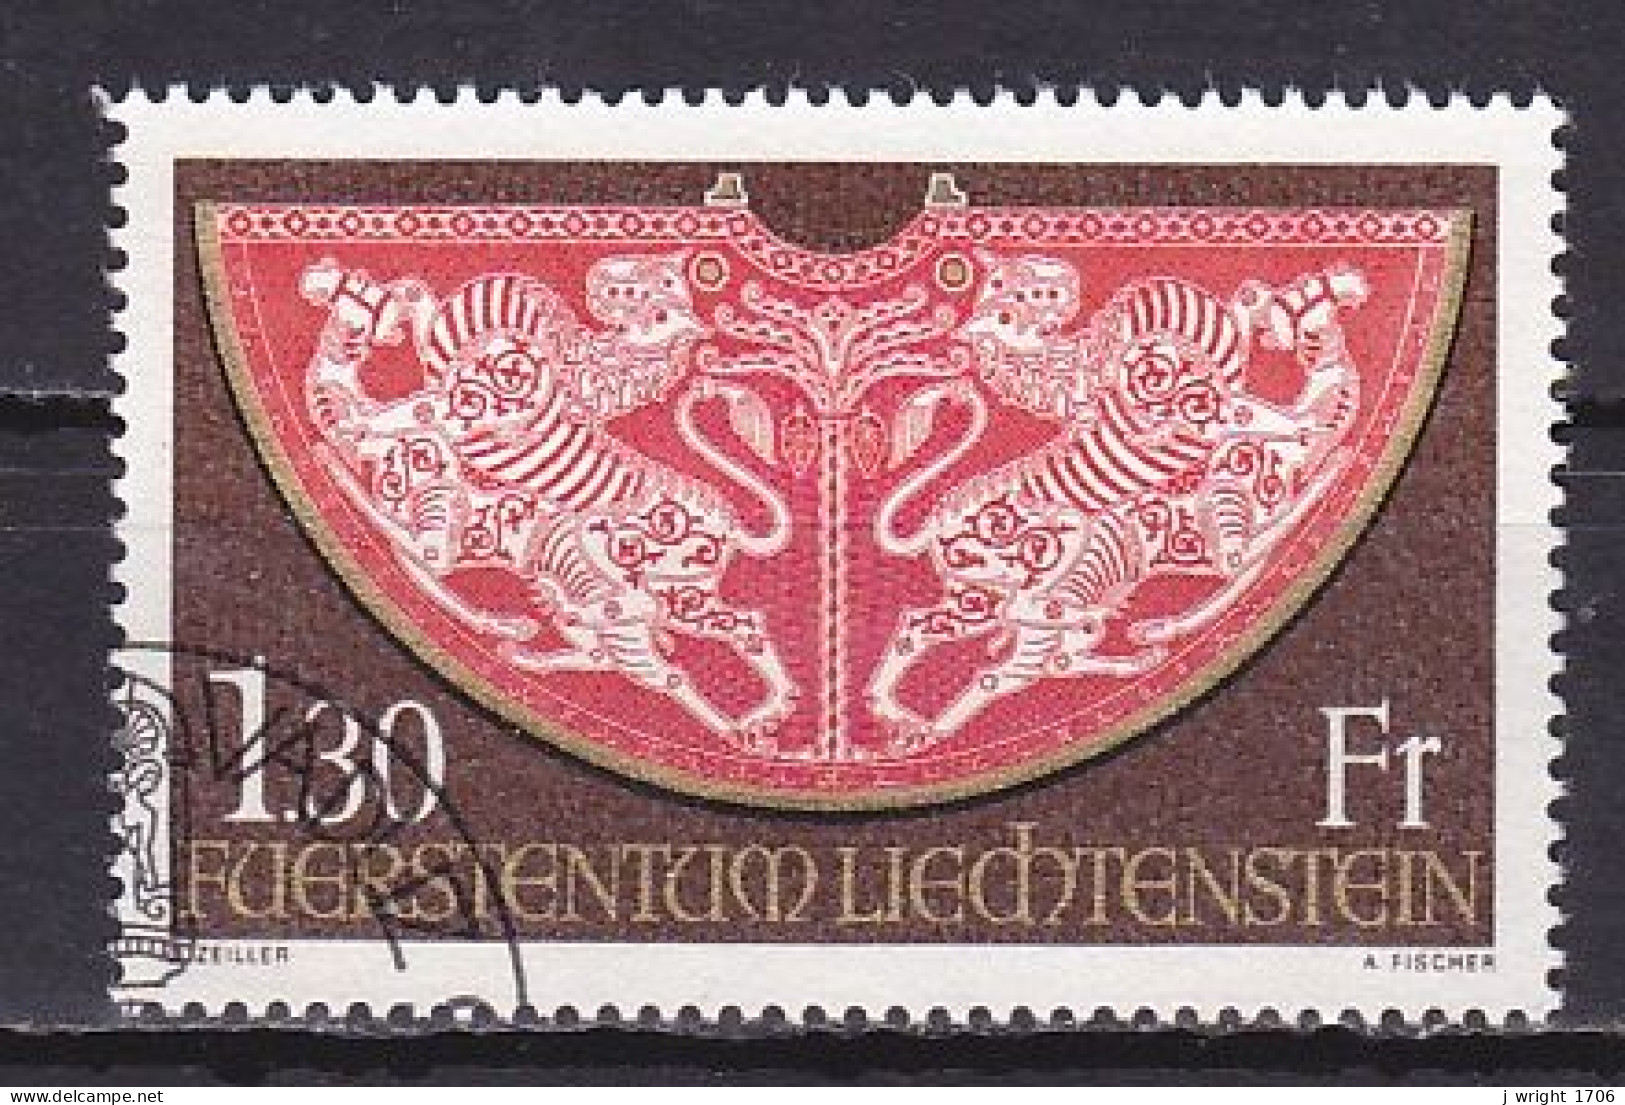 Liechtenstein, 1975, Imperial Insignia 2nd Series, 1.30Fr, CTO - Gebraucht